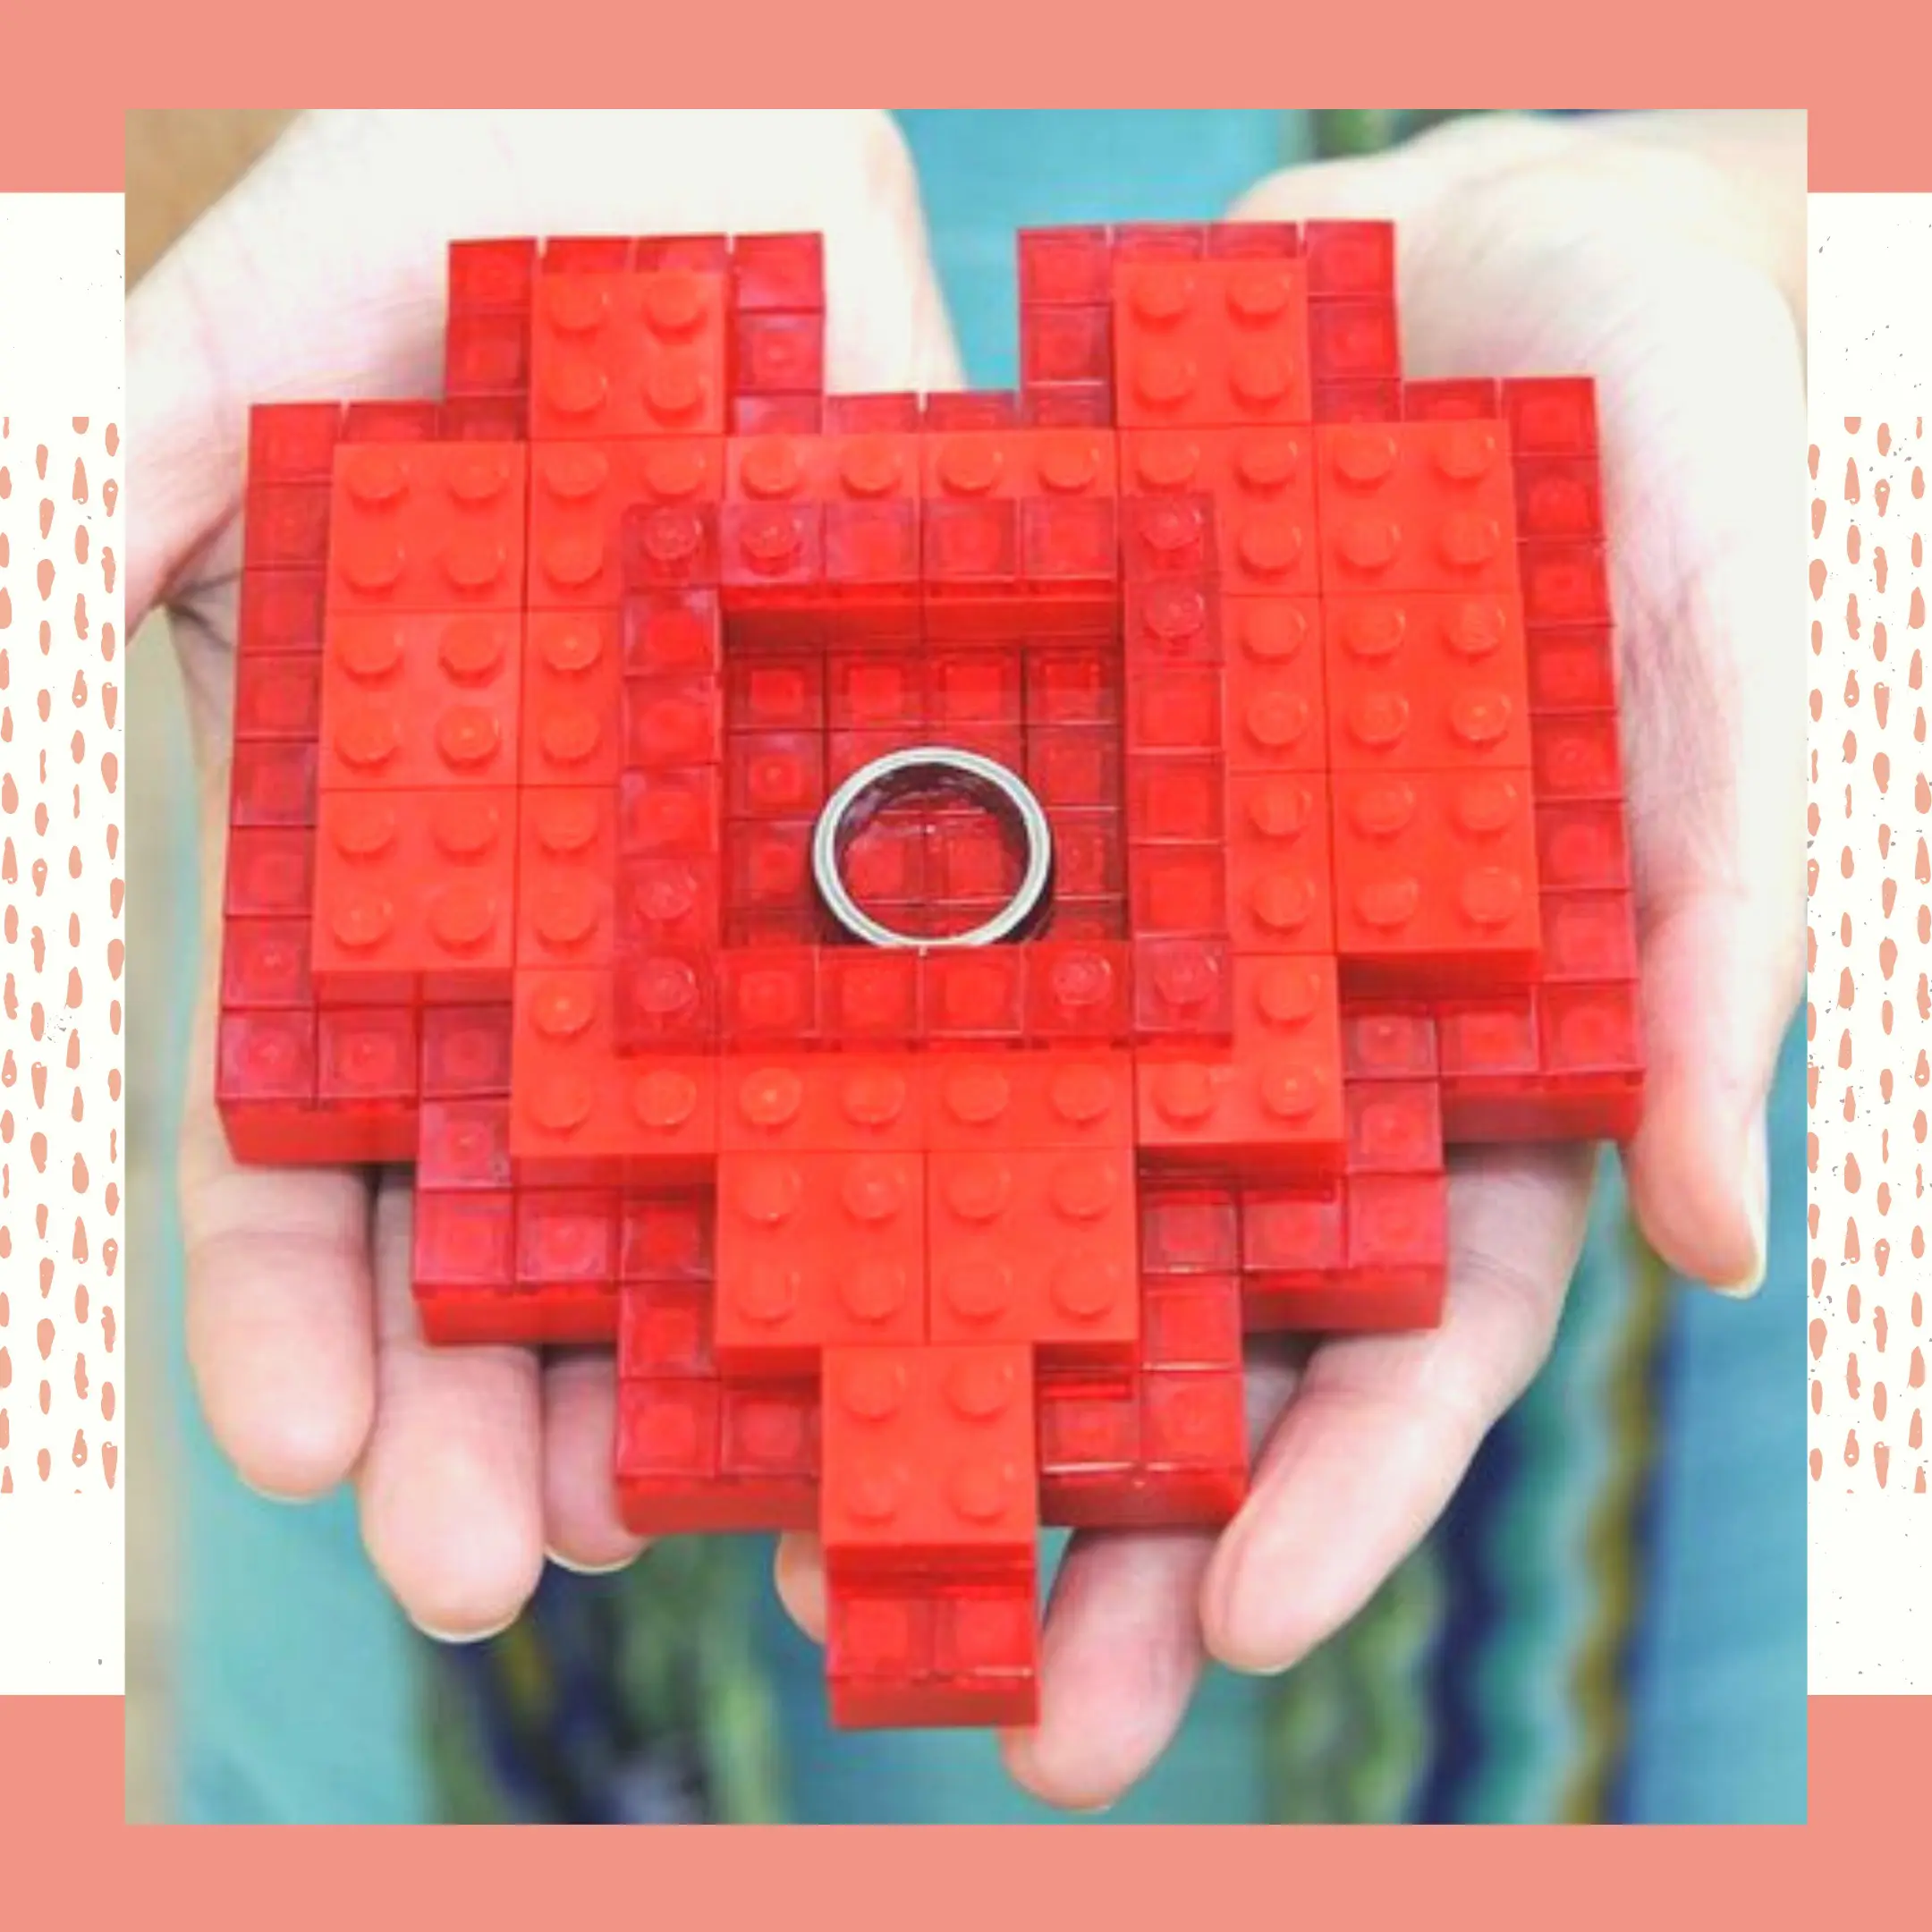 Porta aliança feito com lego na cor vermelha em formato de coração